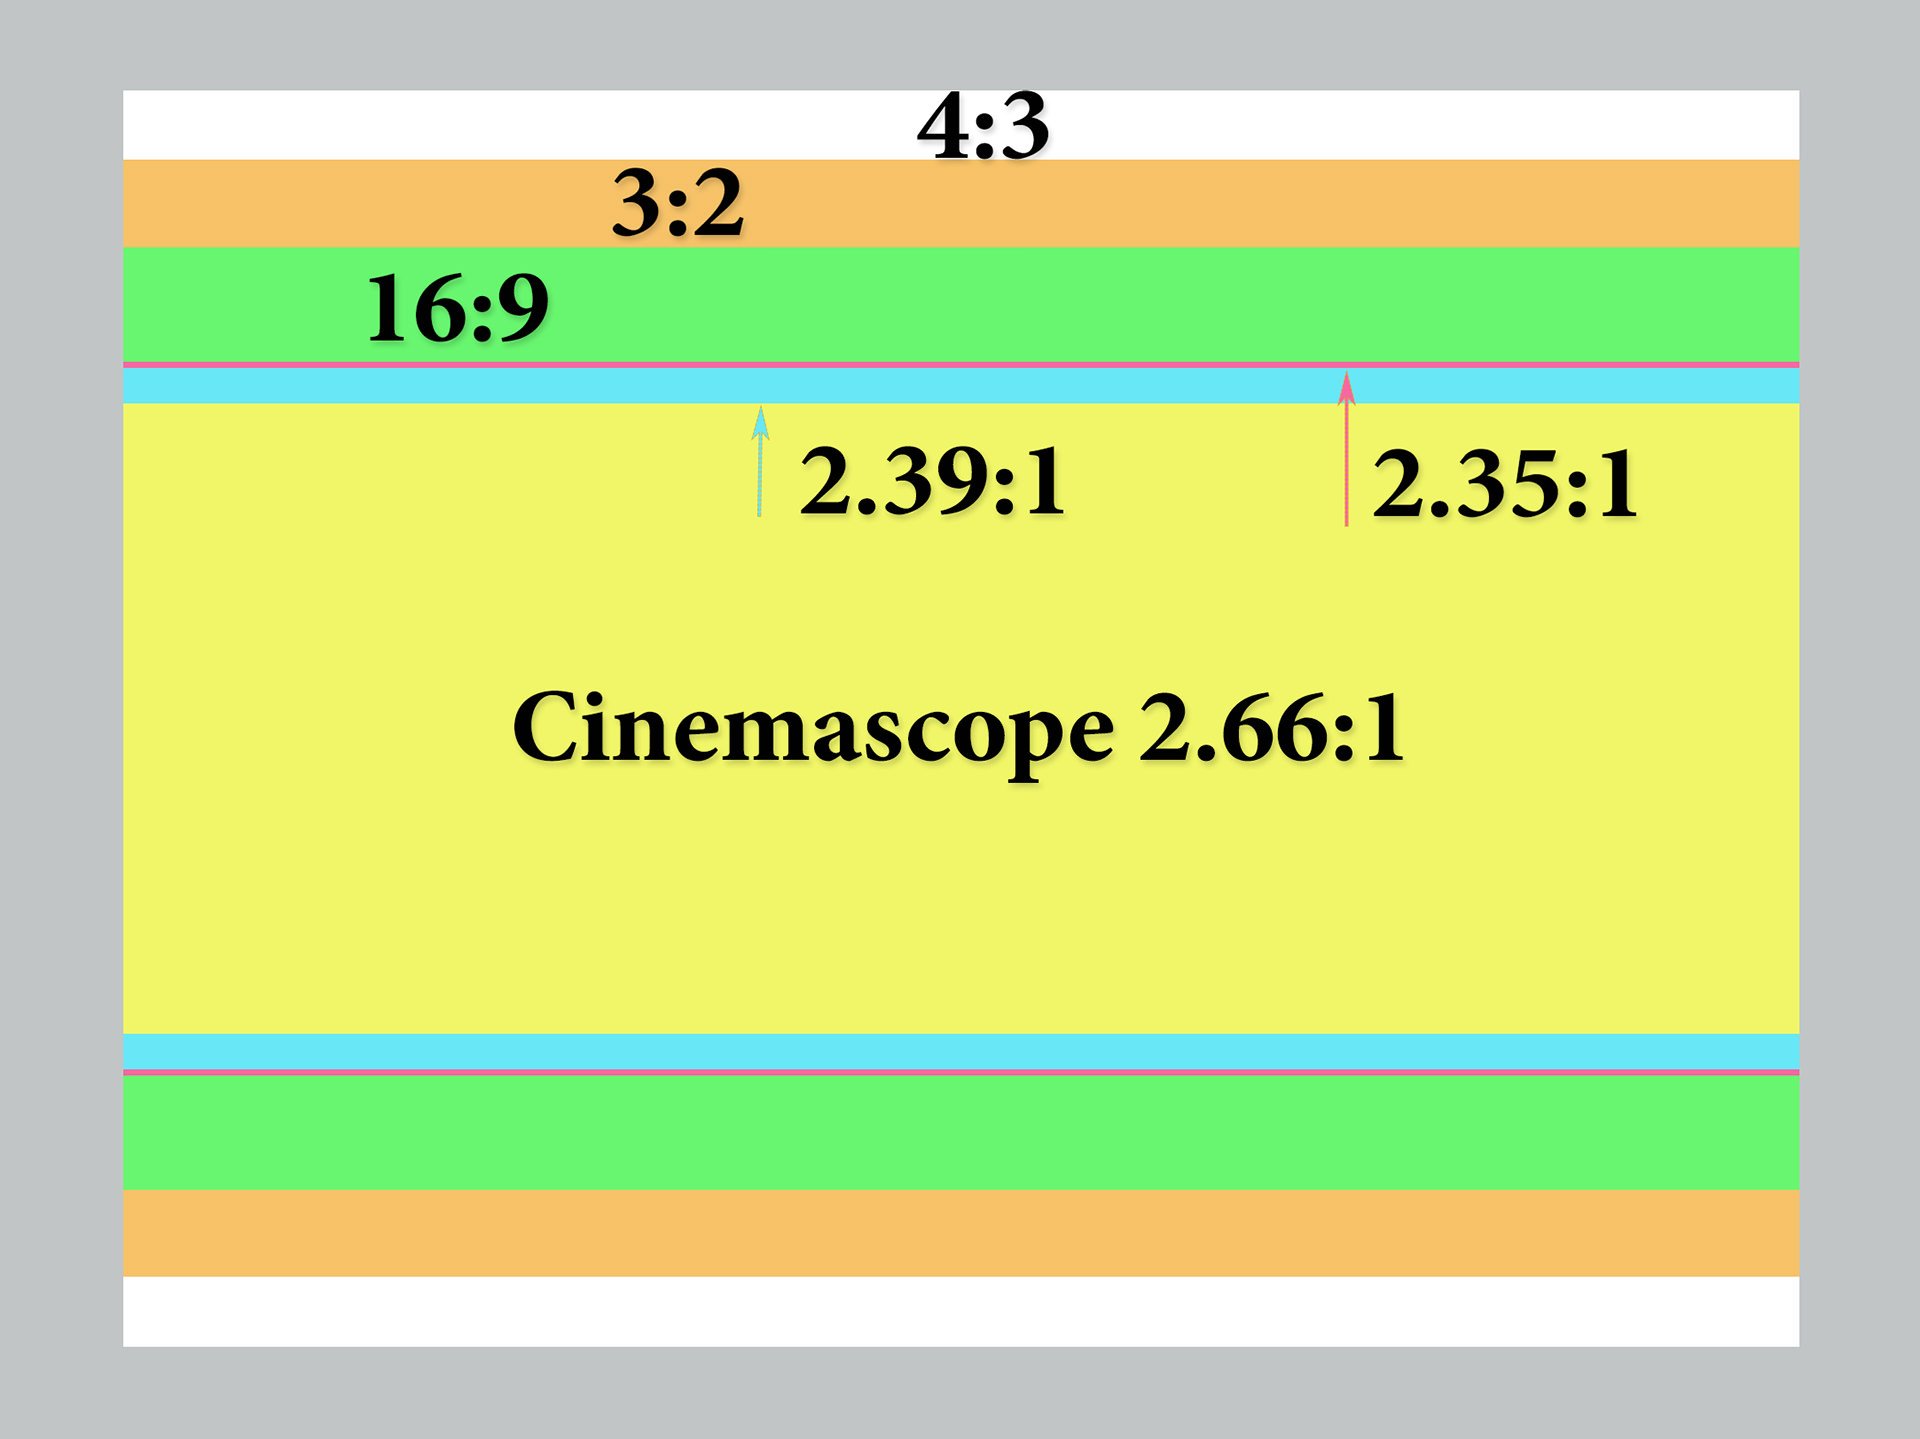 Ống kính Anamorphic cho tỷ lệ khung hình rộng